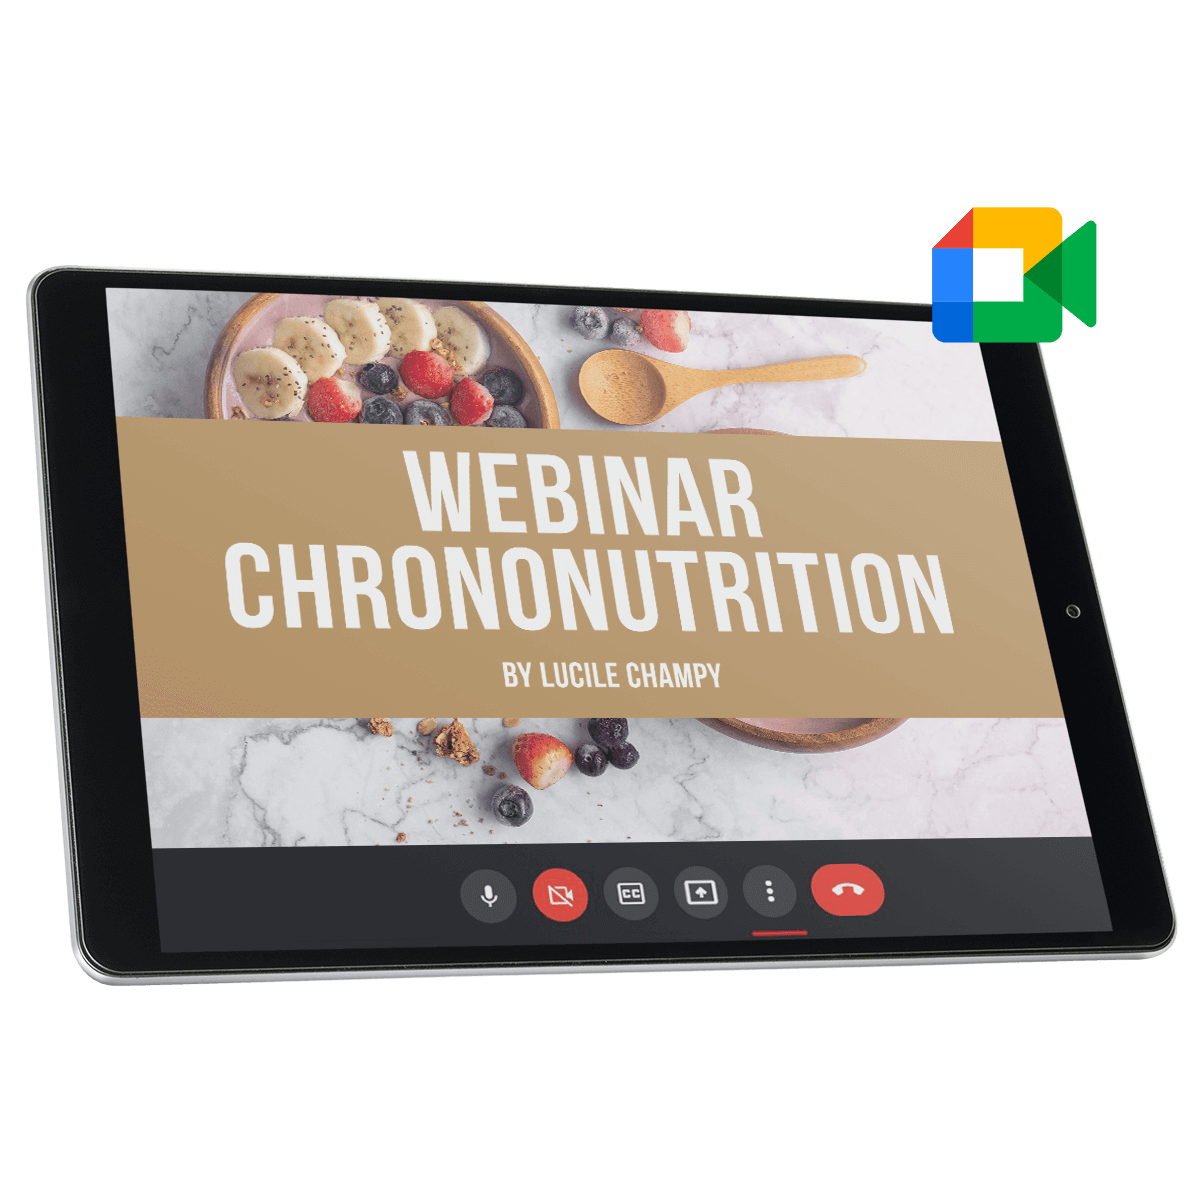 Webinar chrononutrition by Lucile Chmapy